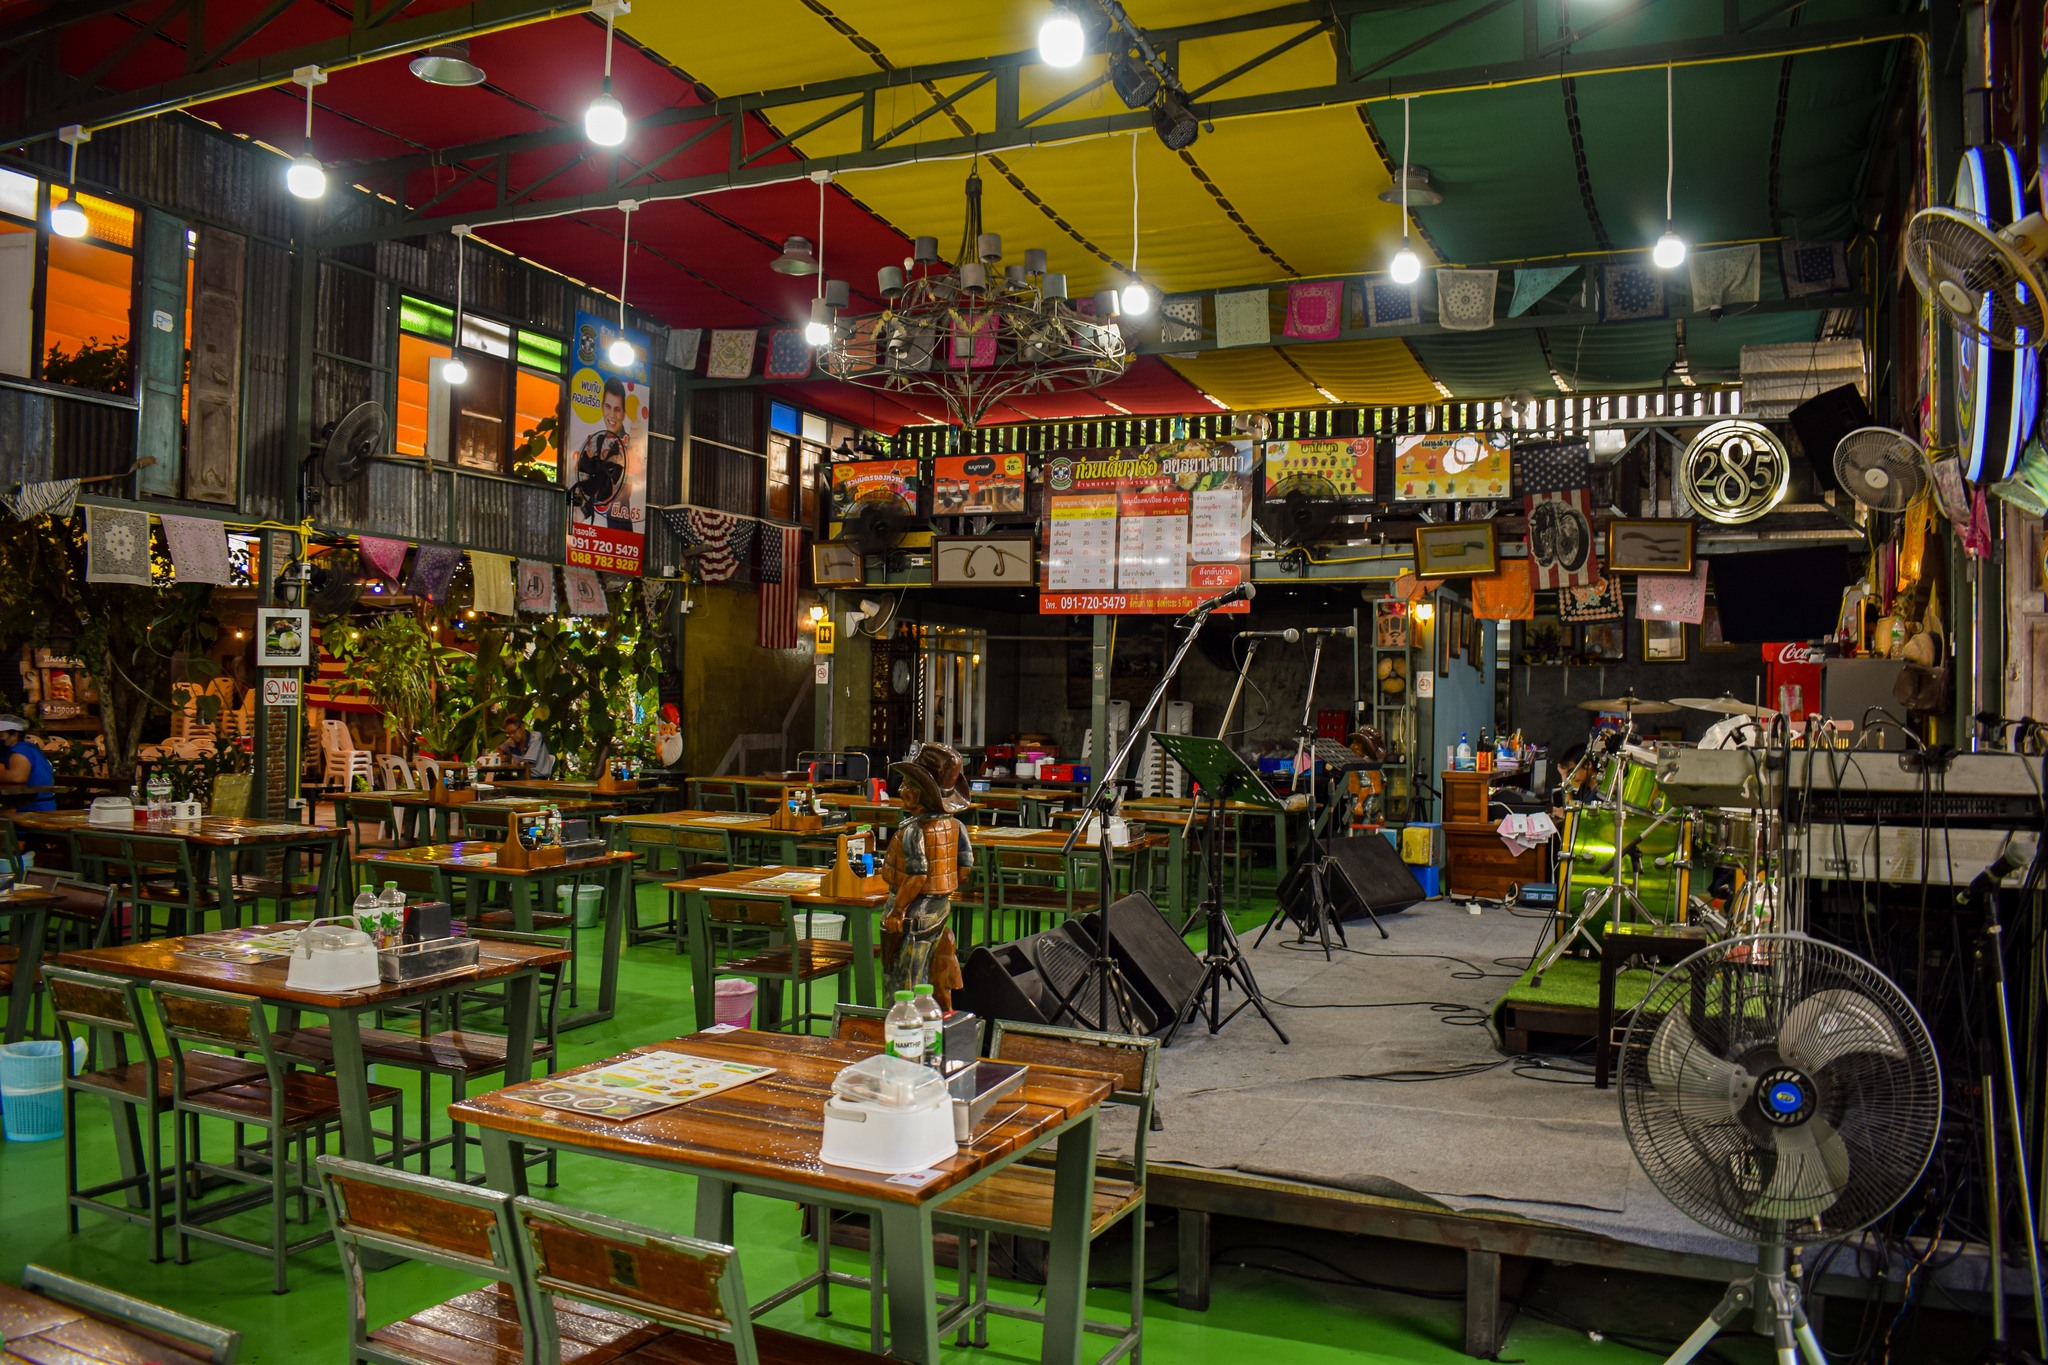 พรรคพวก อาหารใต้ & ซีฟู้ด สวนสยาม 18 (Pak Pouak Restaurant) : กรุงเทพมหานคร (Bangkok)